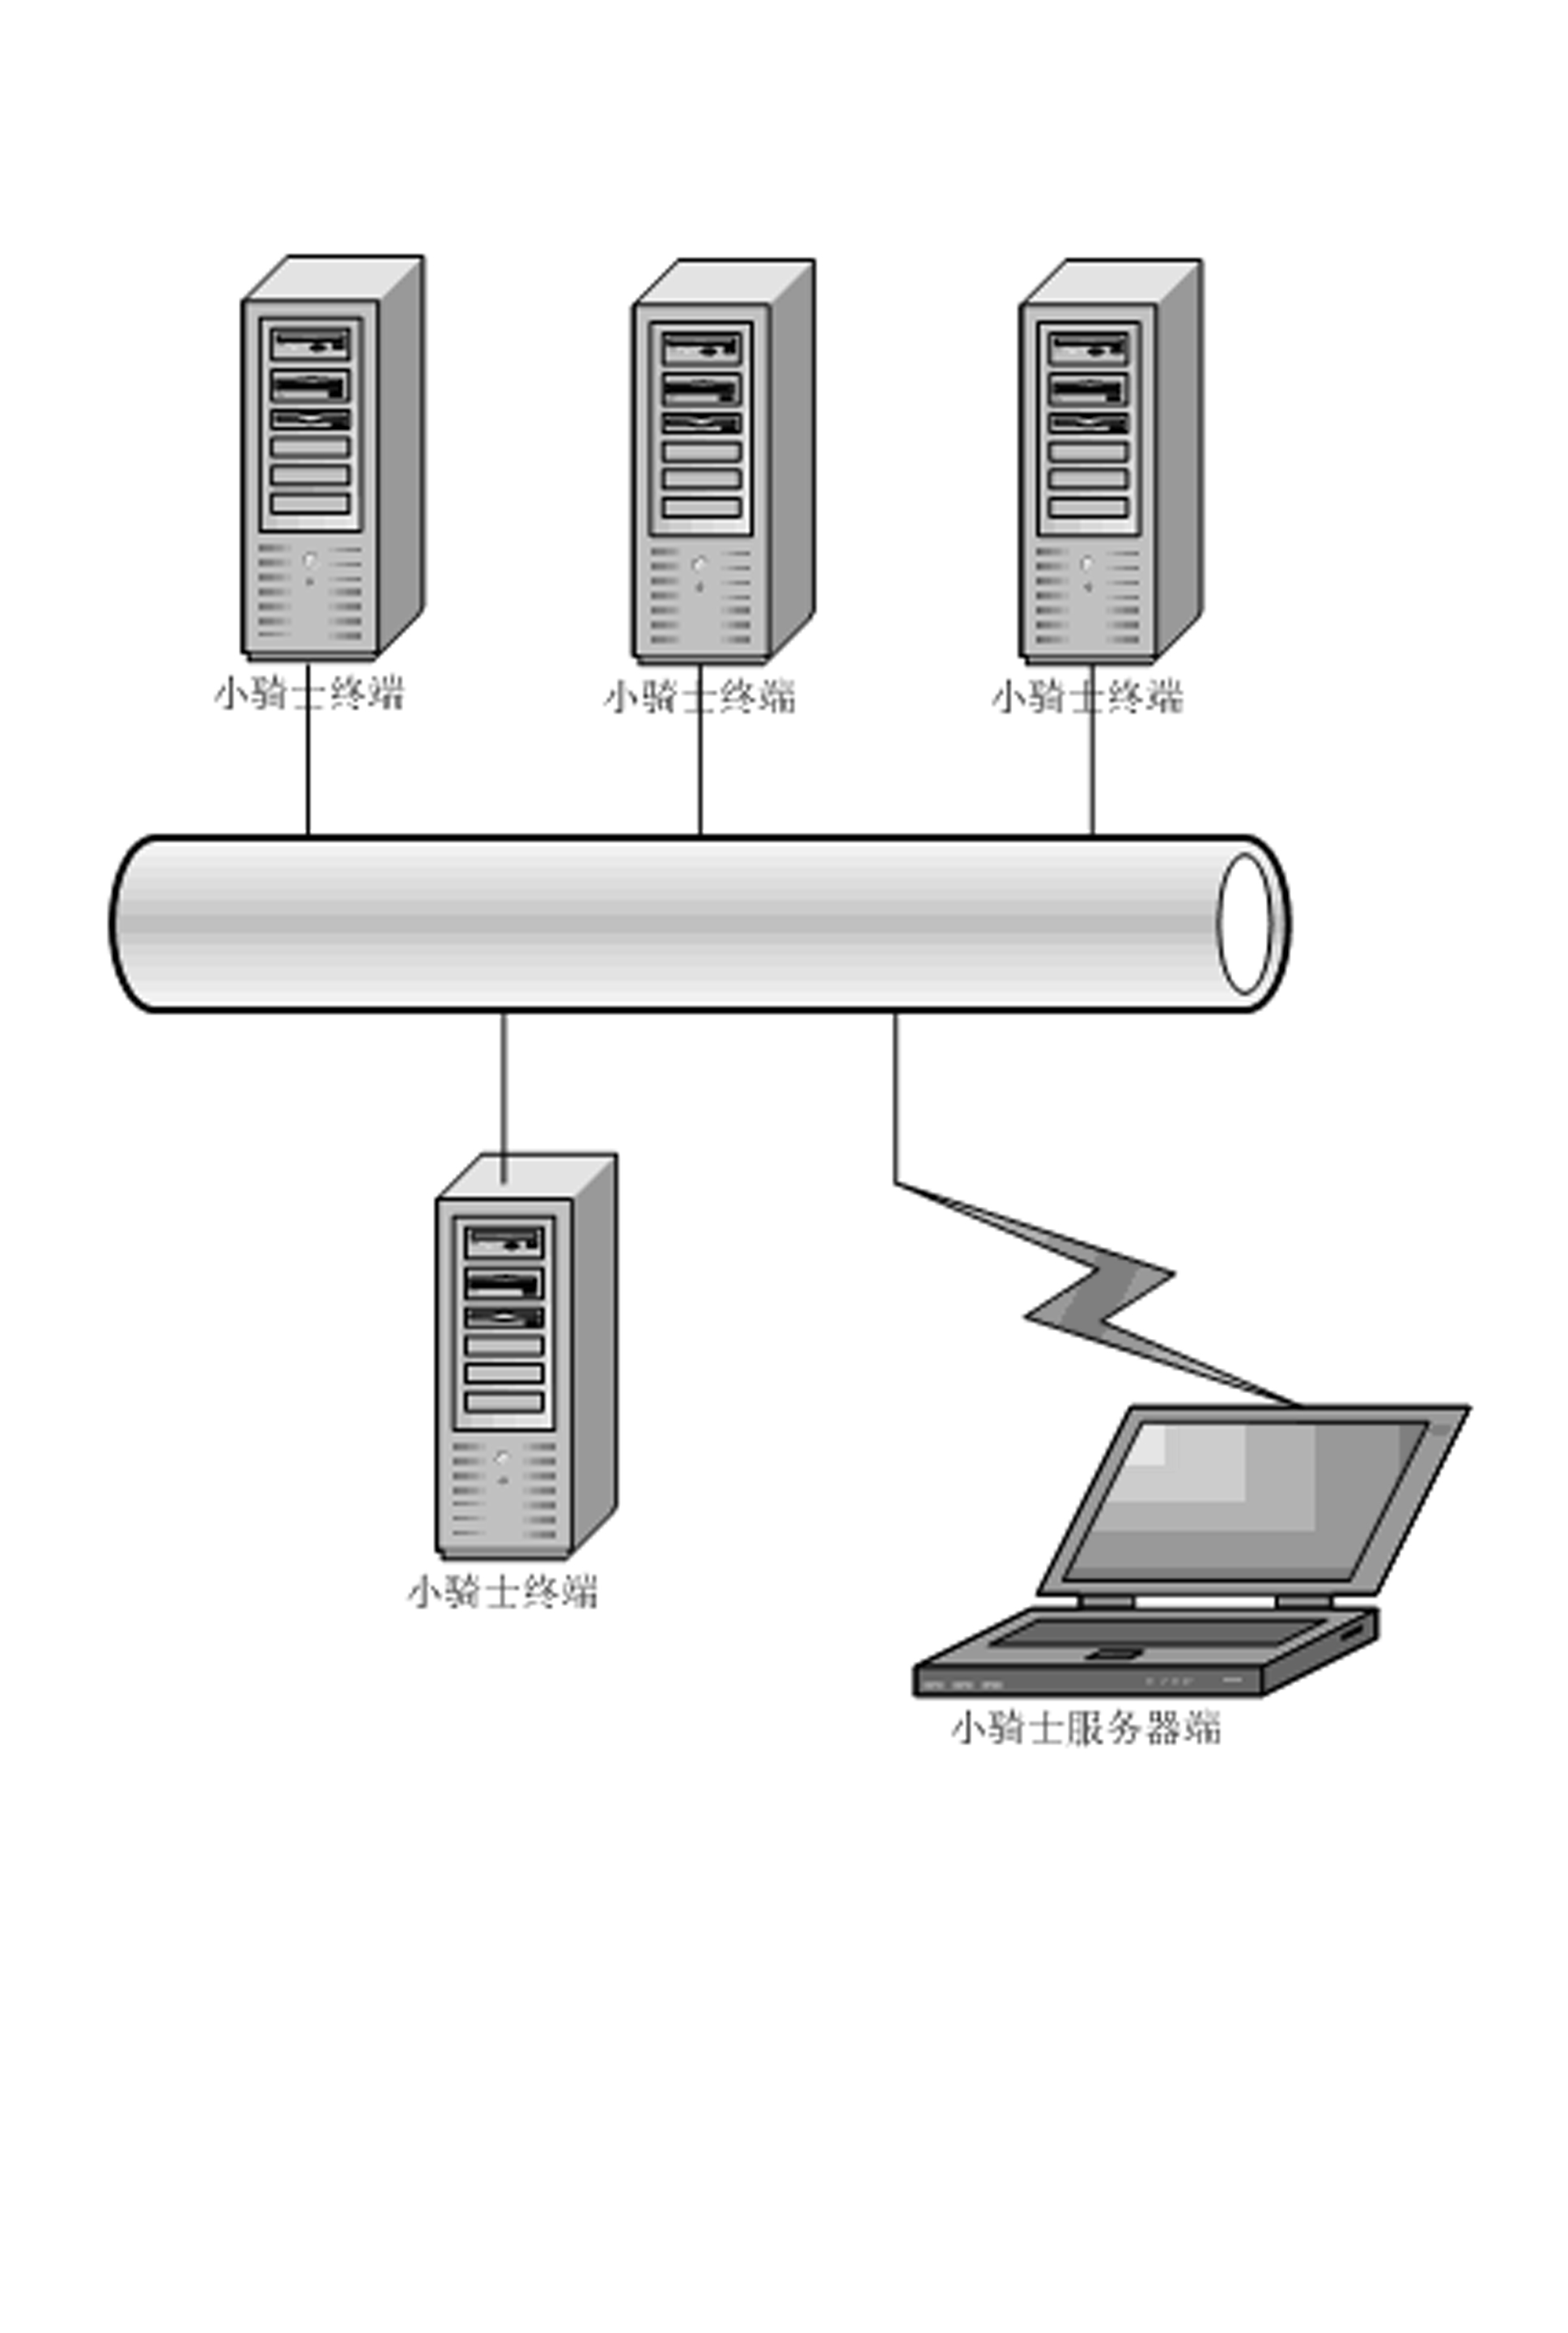 Method for managing server data backup